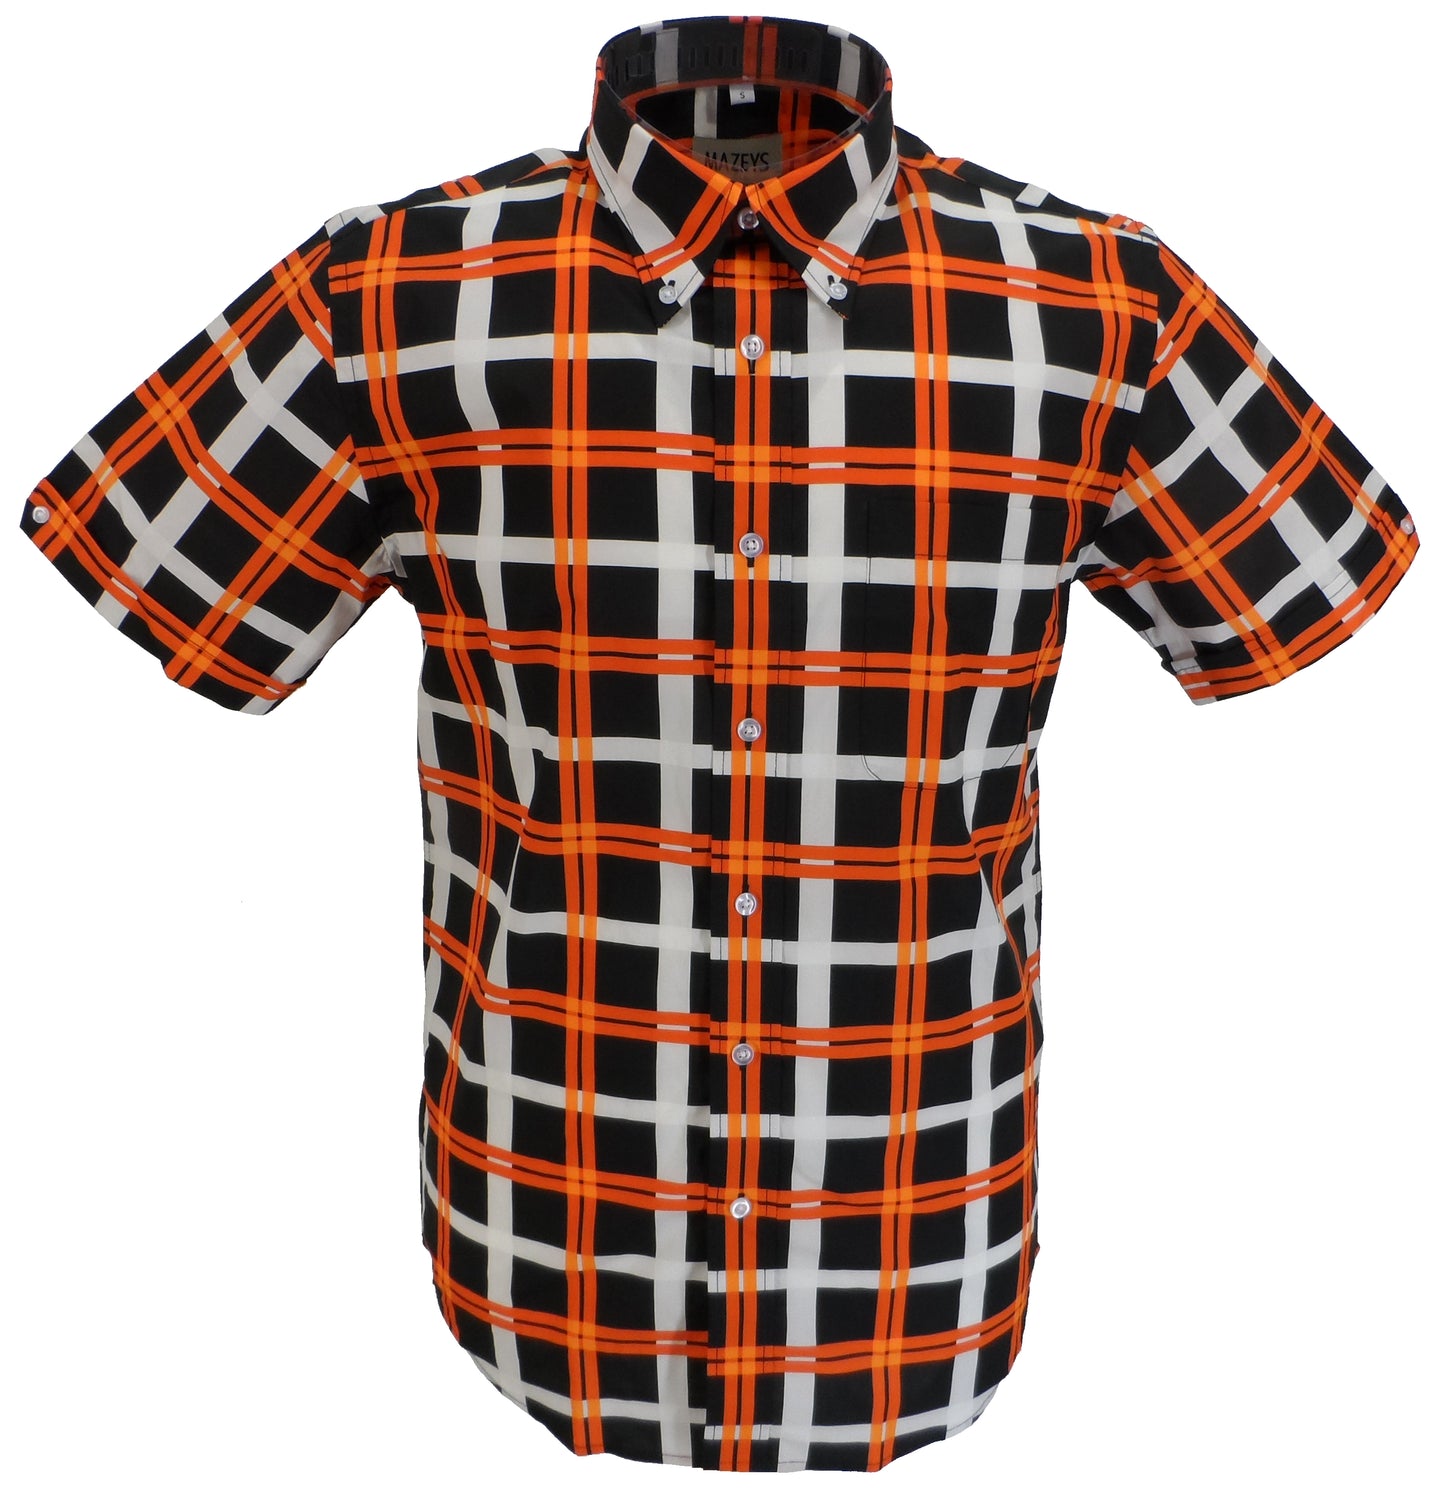 Mazeys herre sort/orange/hvid ternet 100% bomuld kortærmede skjorter